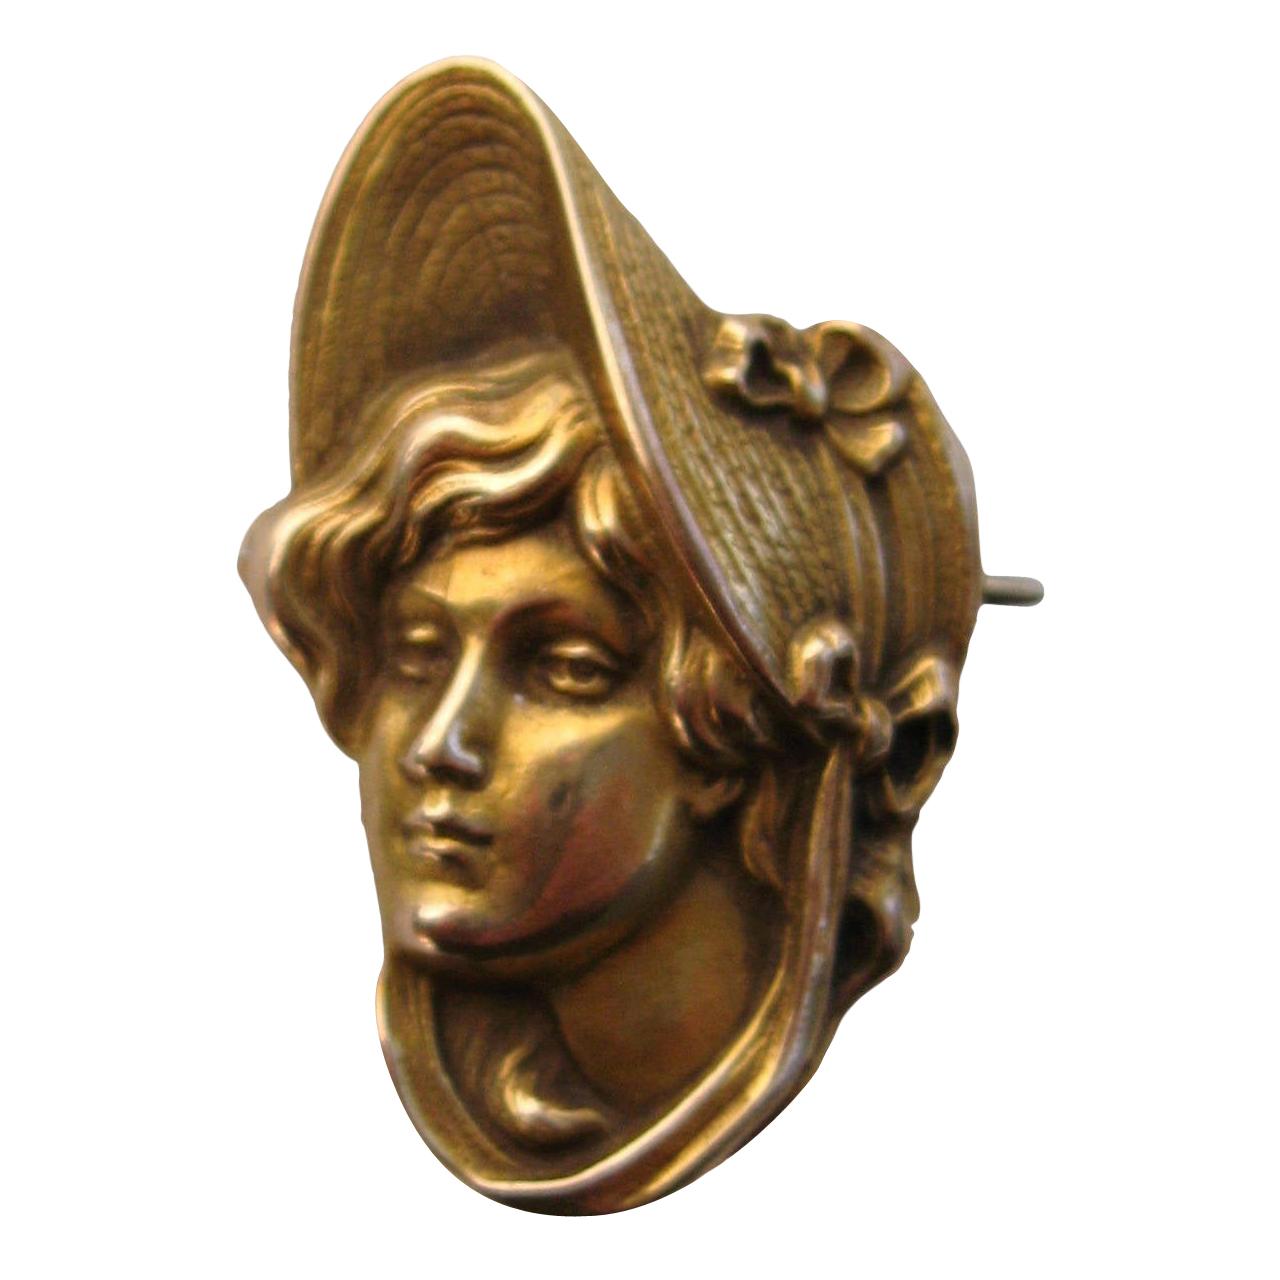 Jugendstil Gold Portrait Brosche Pin Anhänger 1900s